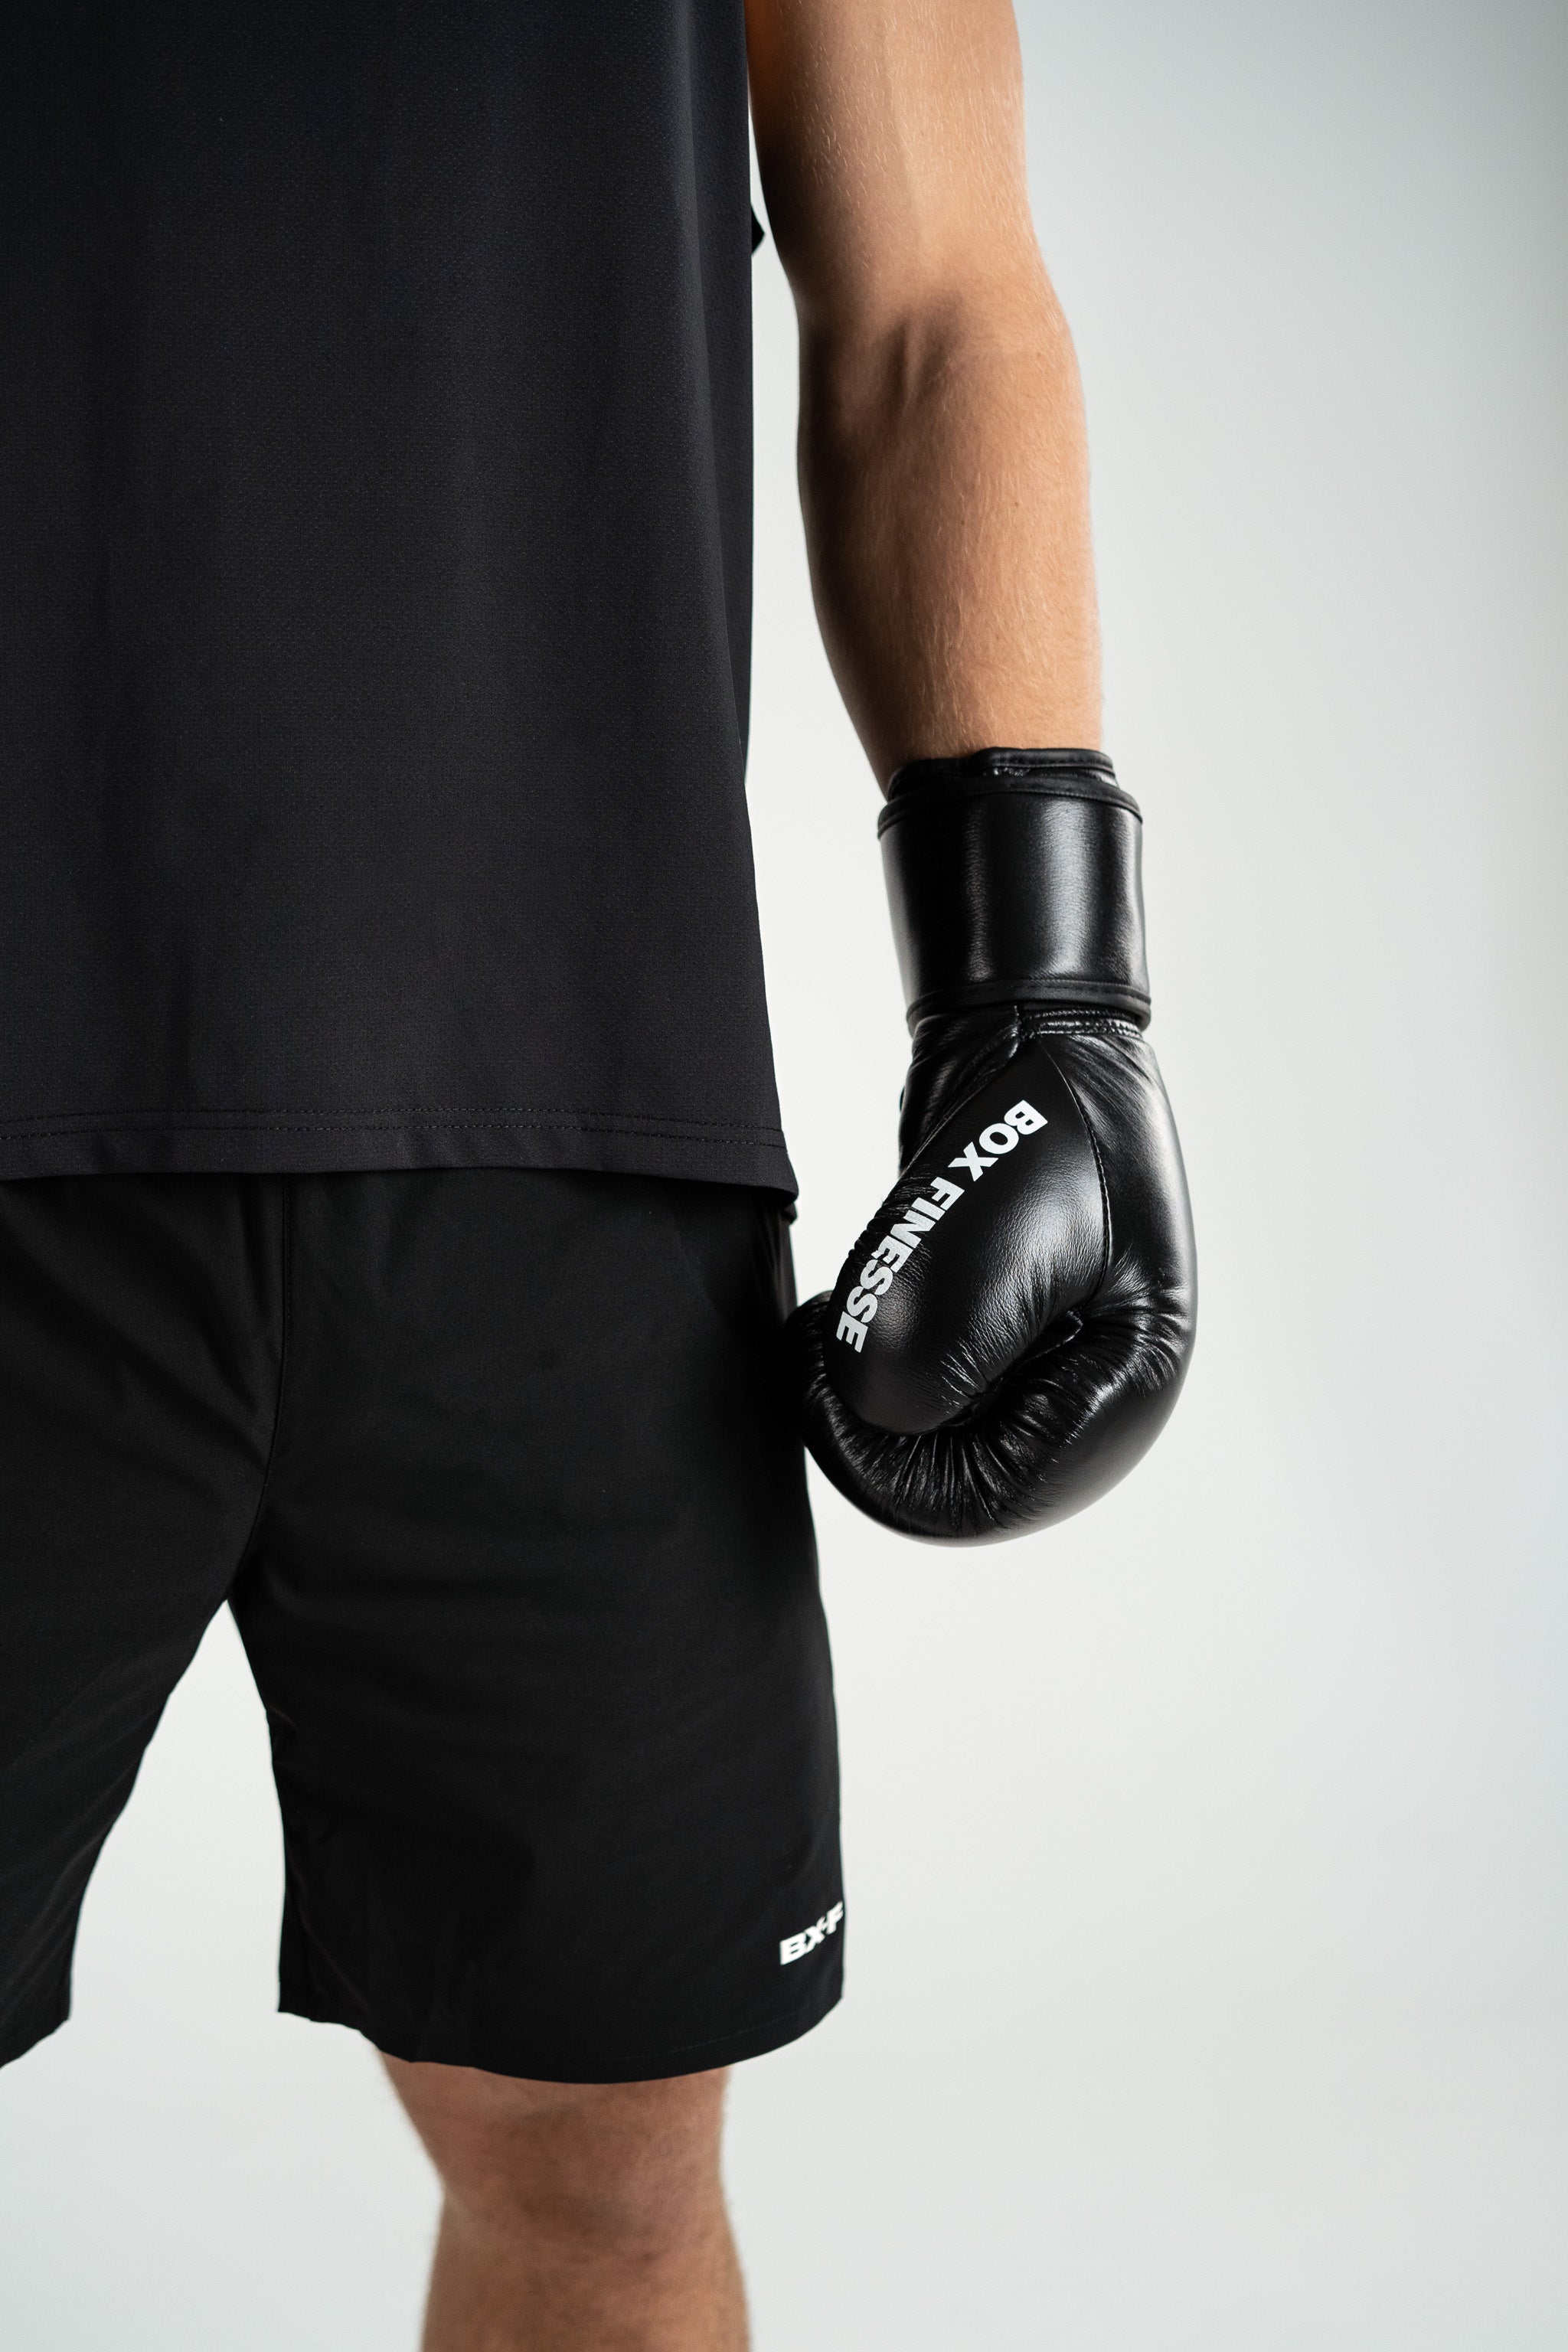 Speedwork Glove Set (Black)